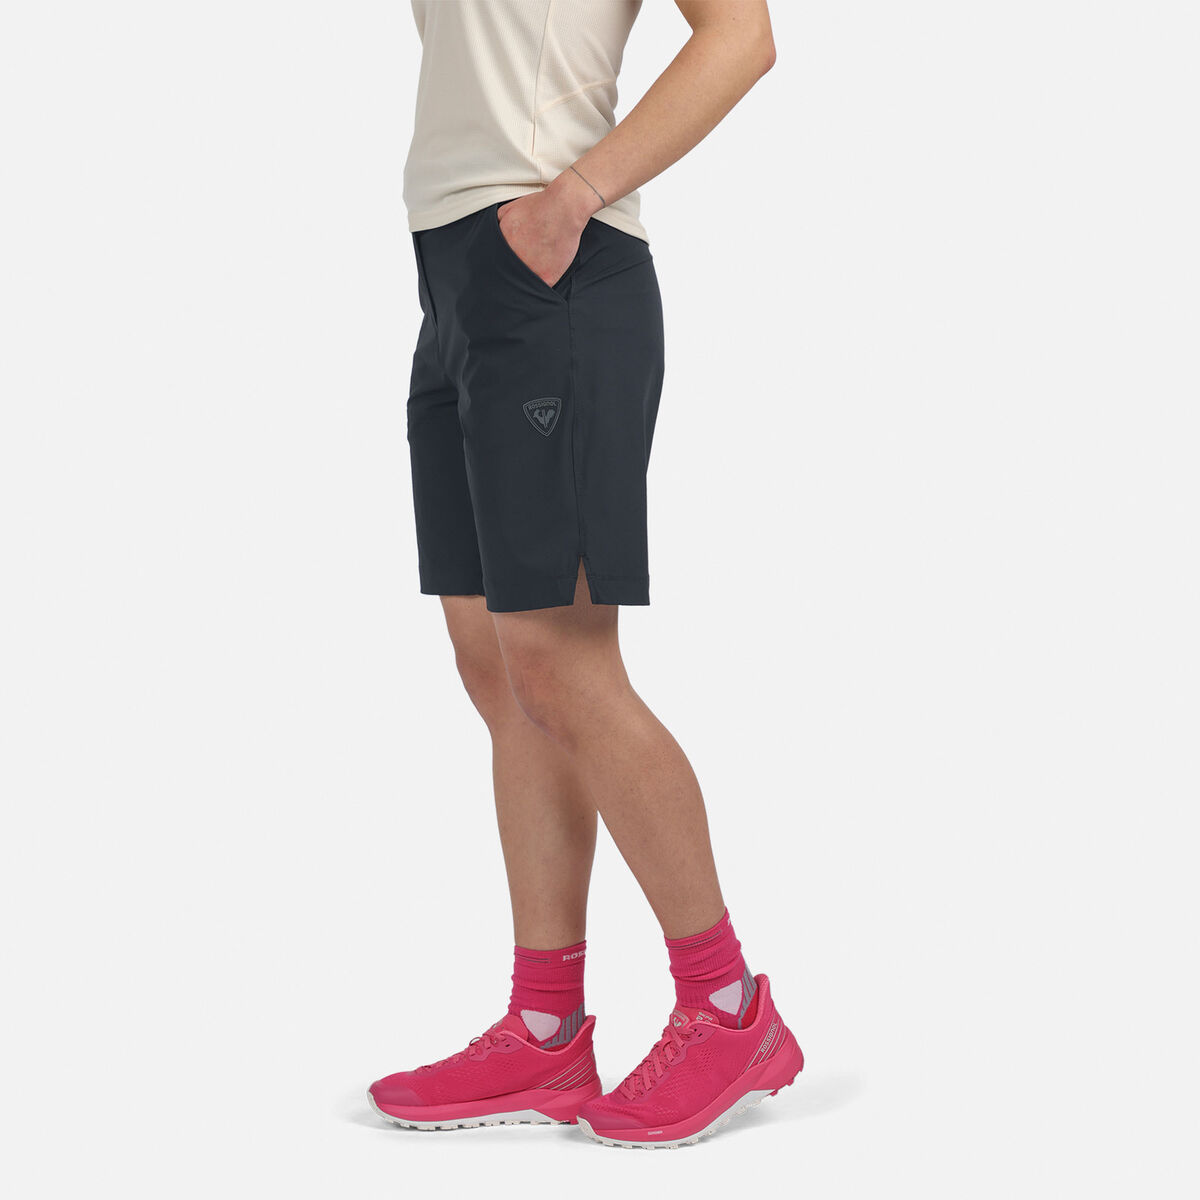 Pantalones cortos SKPR para mujer